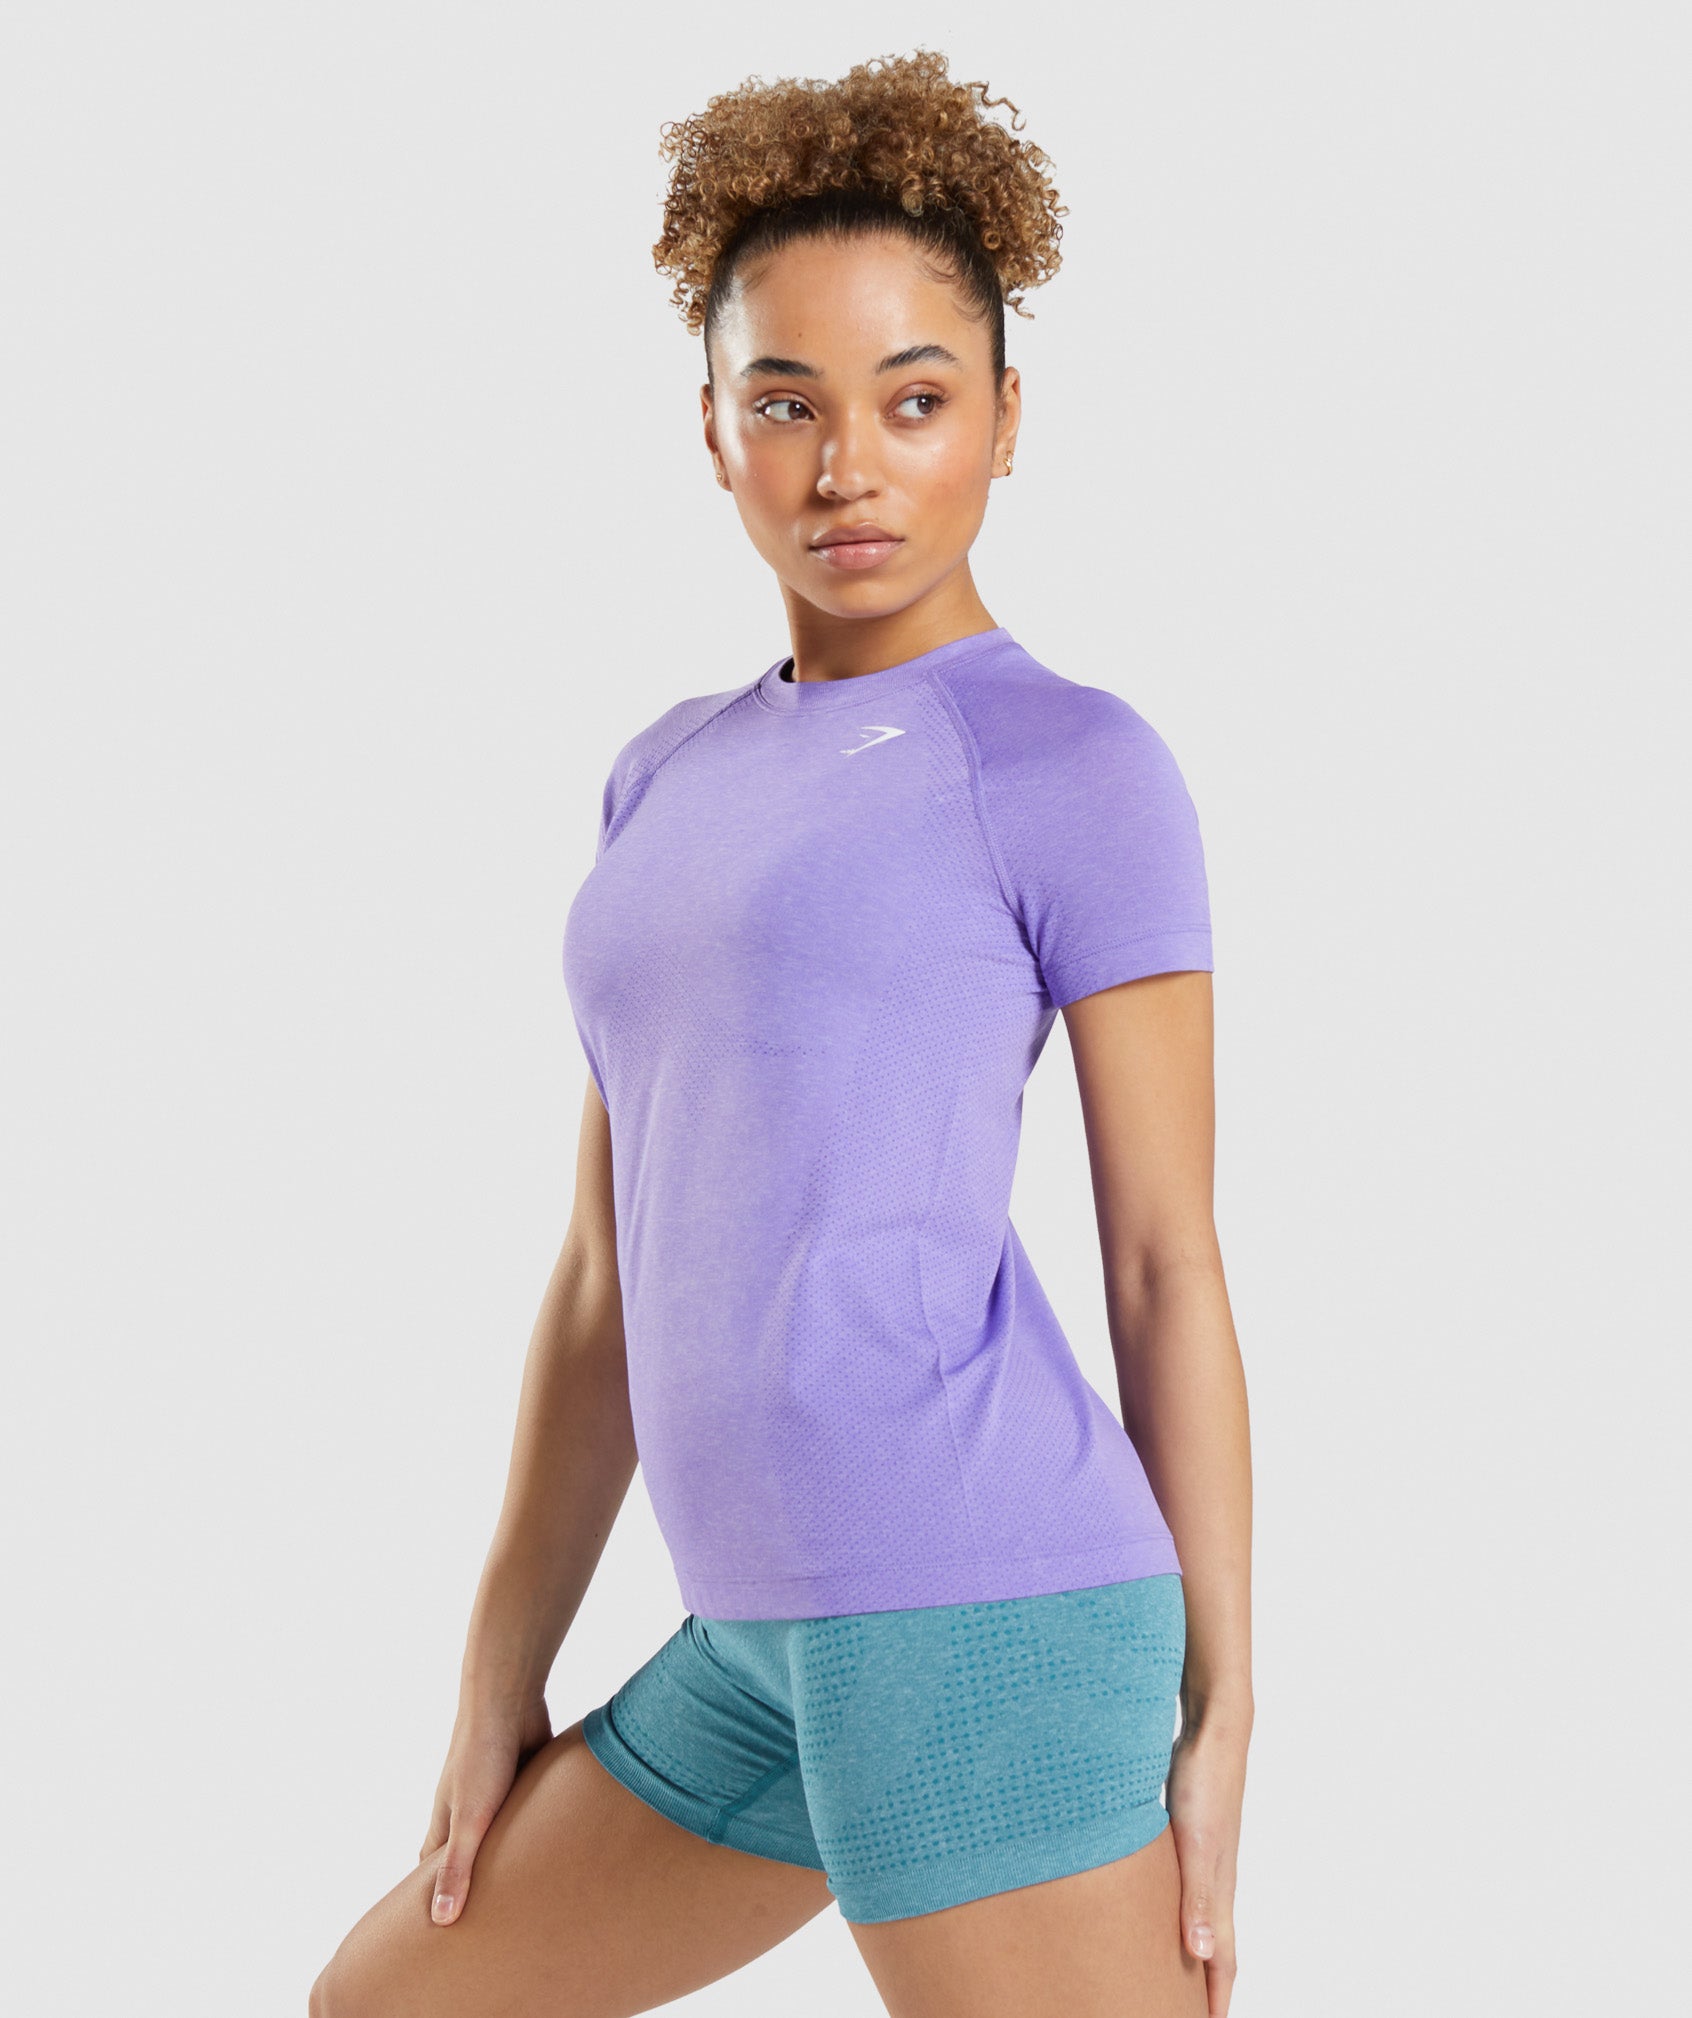 Vital Seamless 2.0 Light T-Shirt in Bright Purple Marl - view 3